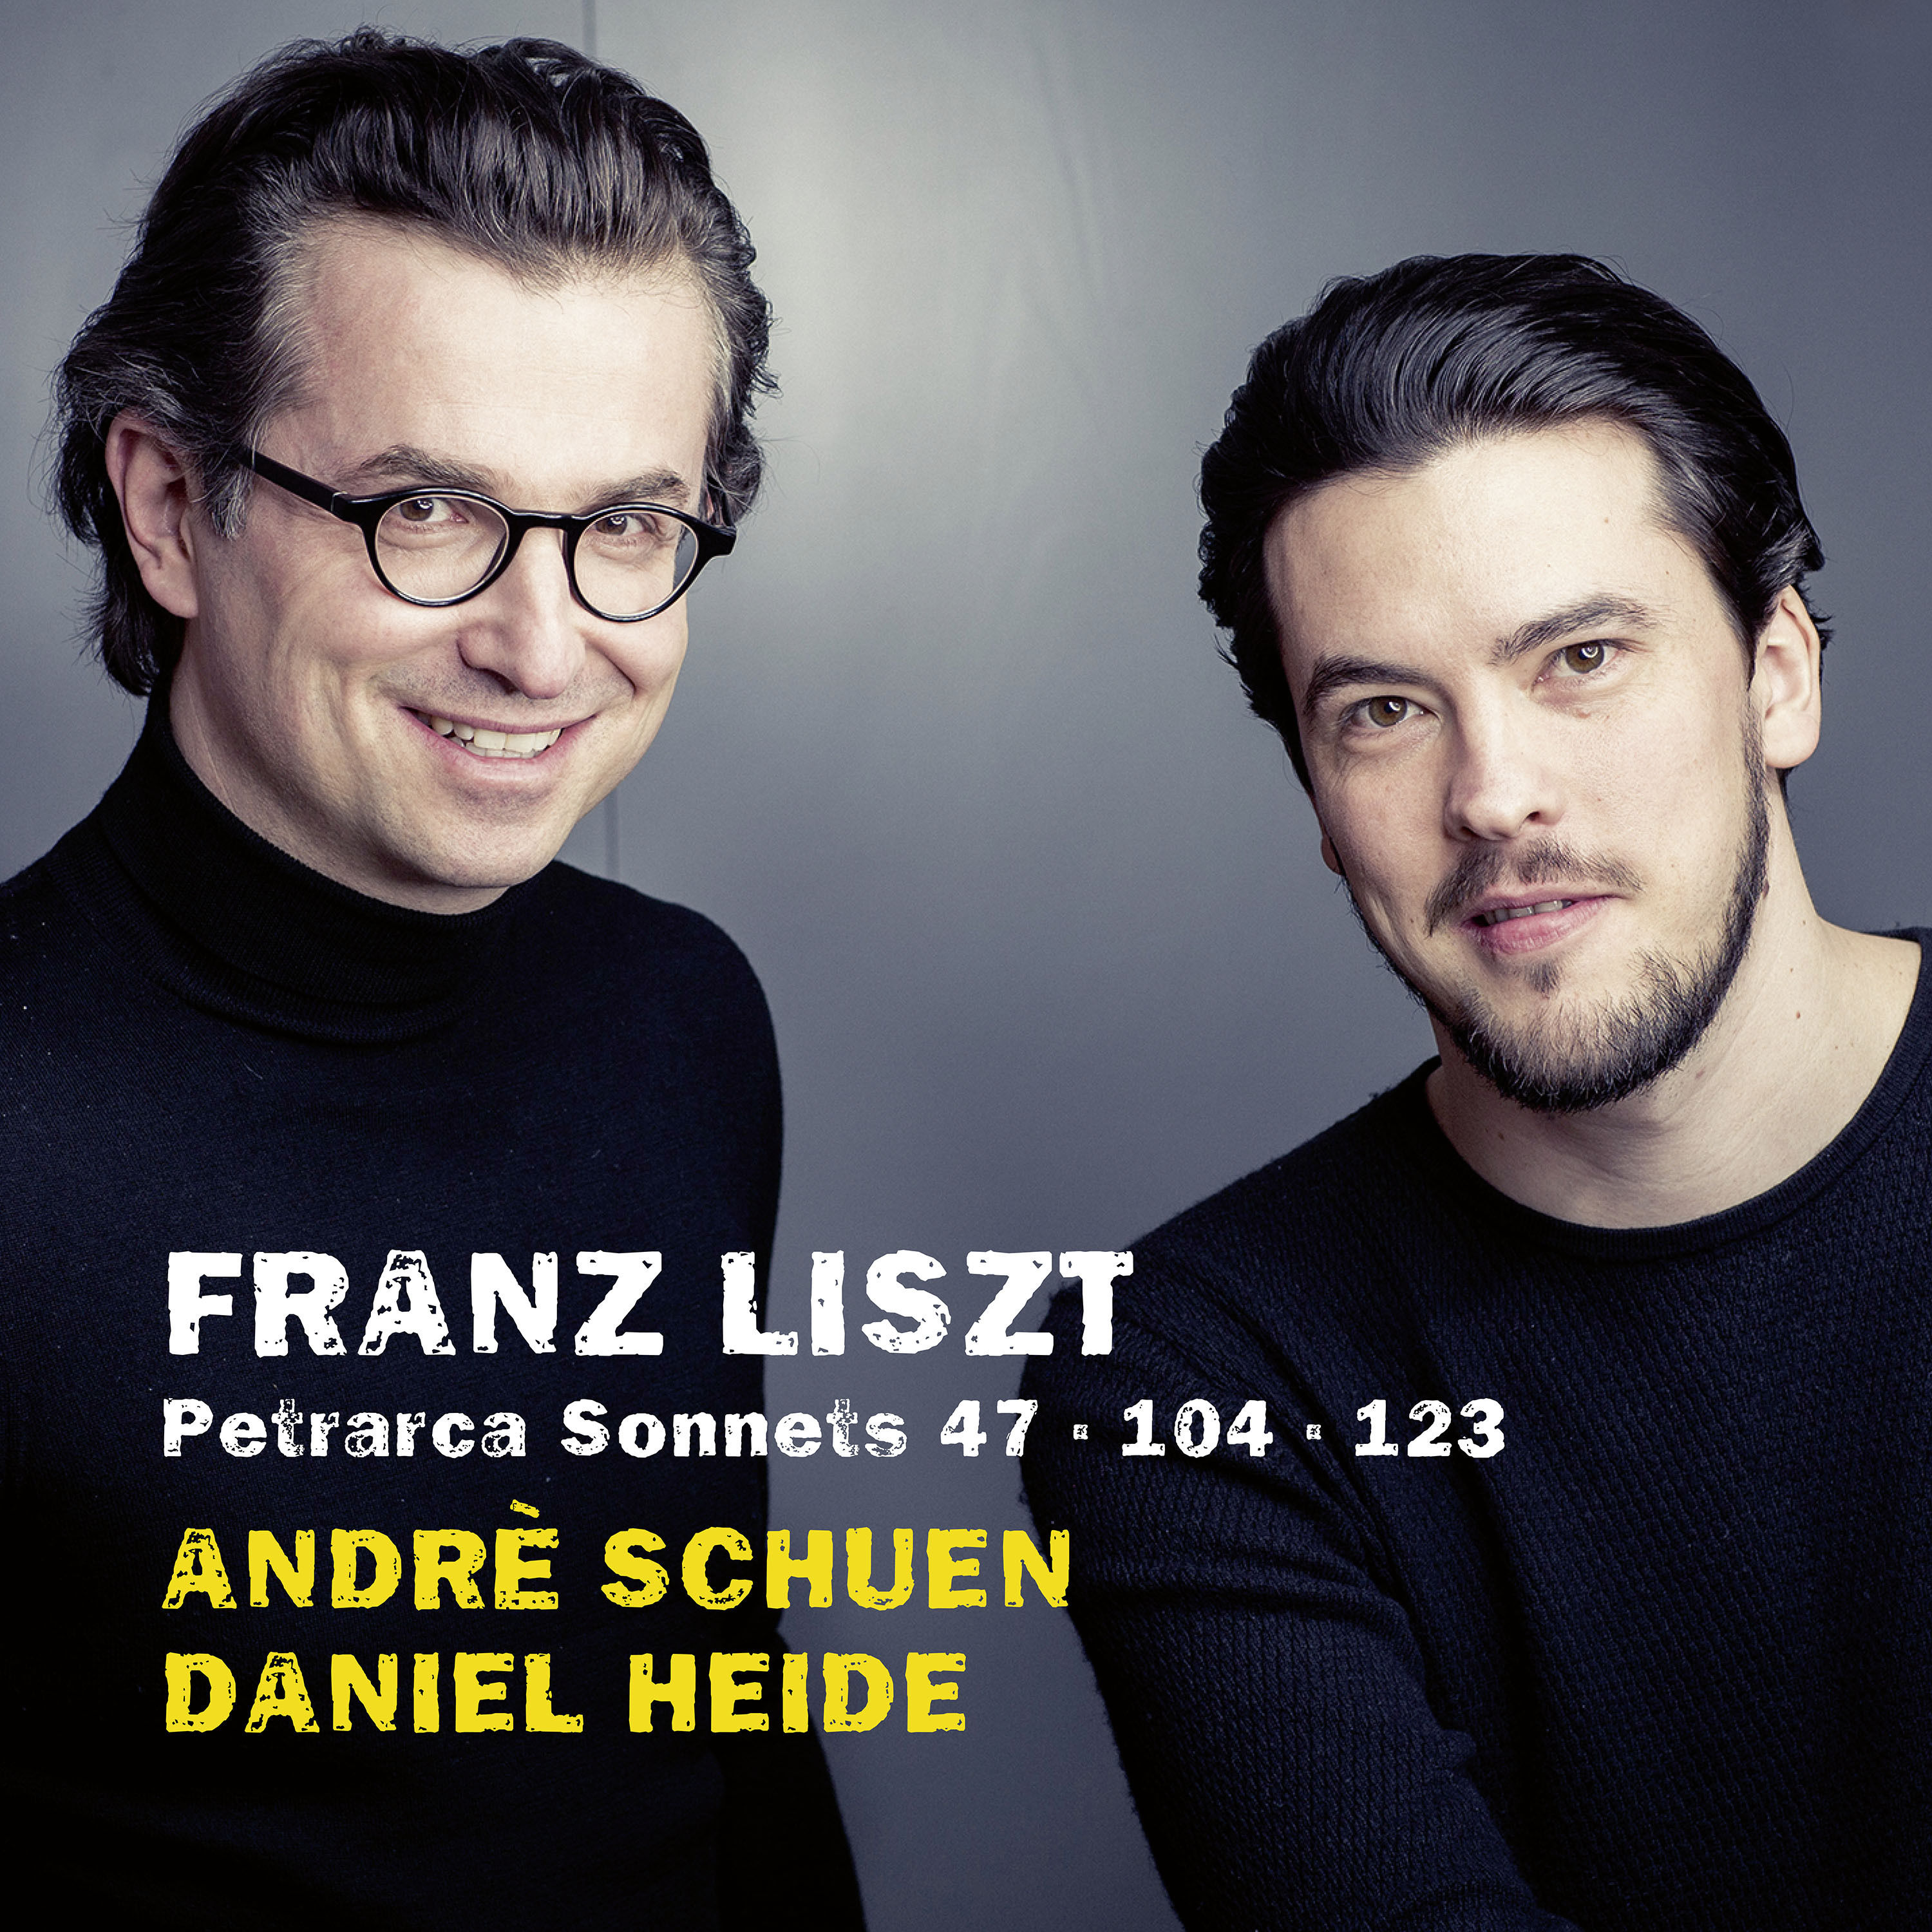 Andre Schuen and Daniel Heide - Liszt: Petrarca Sonnets (2019) [FLAC 24bit/96kHz]